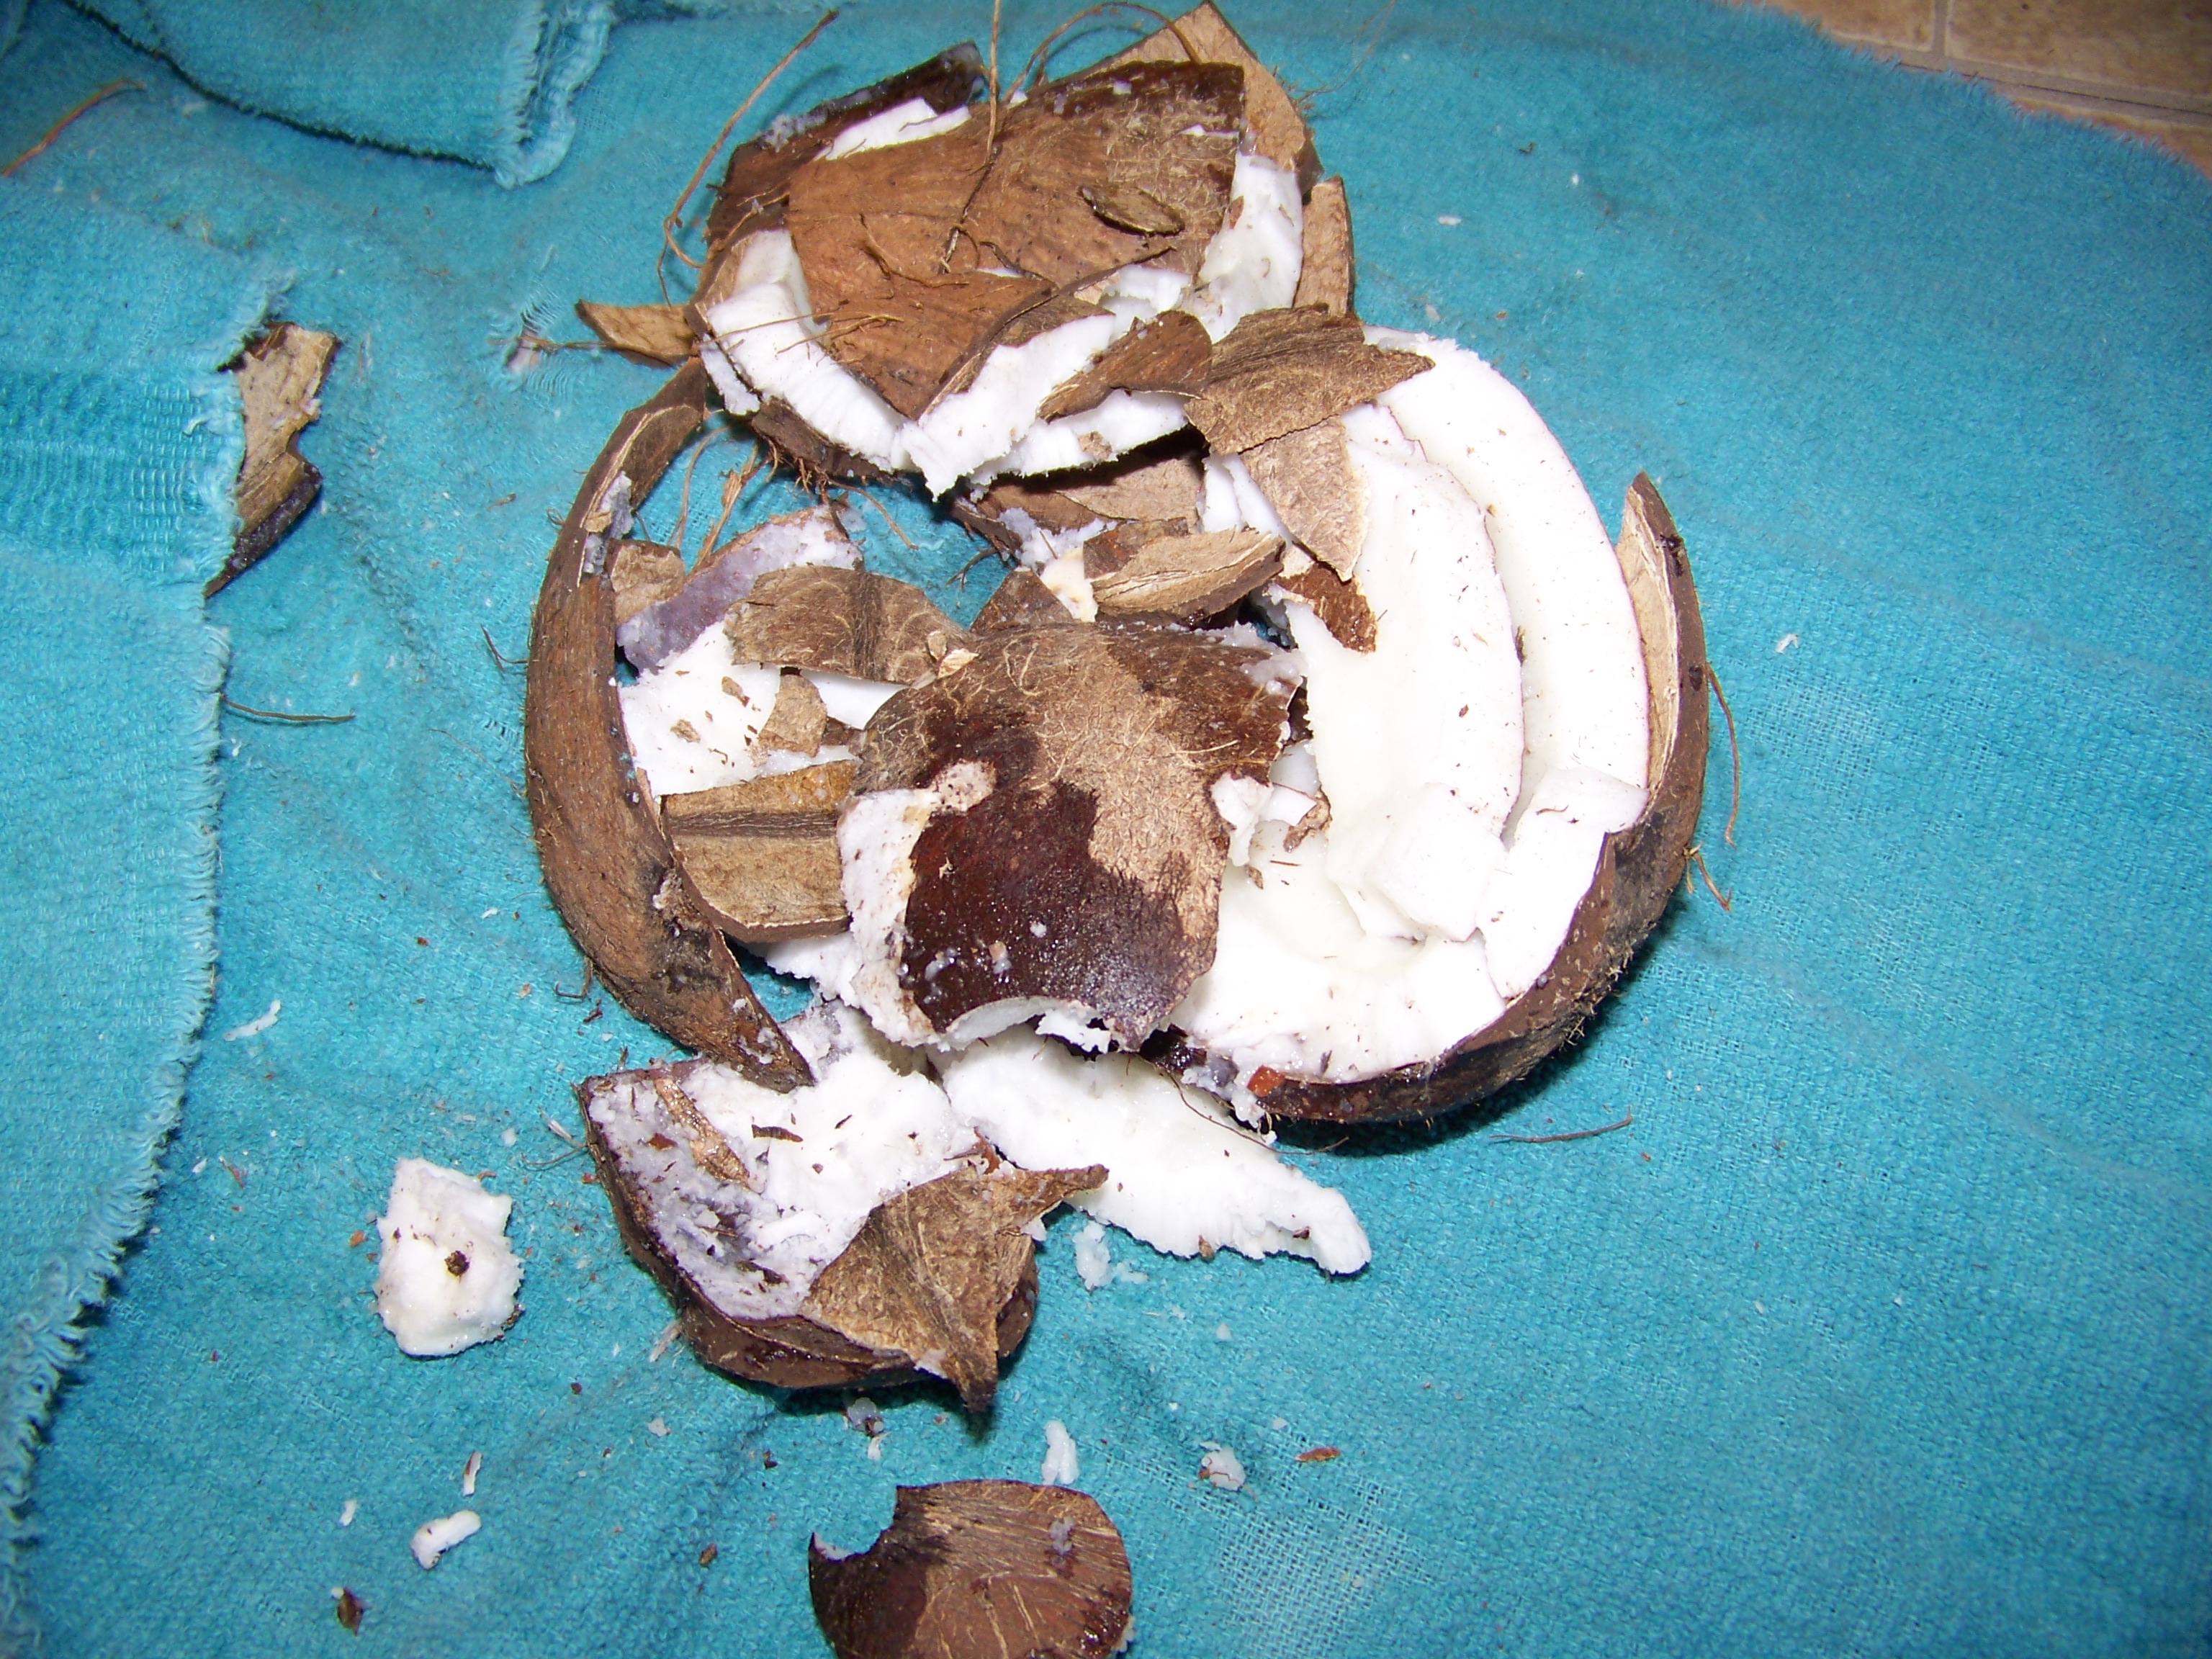 Smashed coconut photo